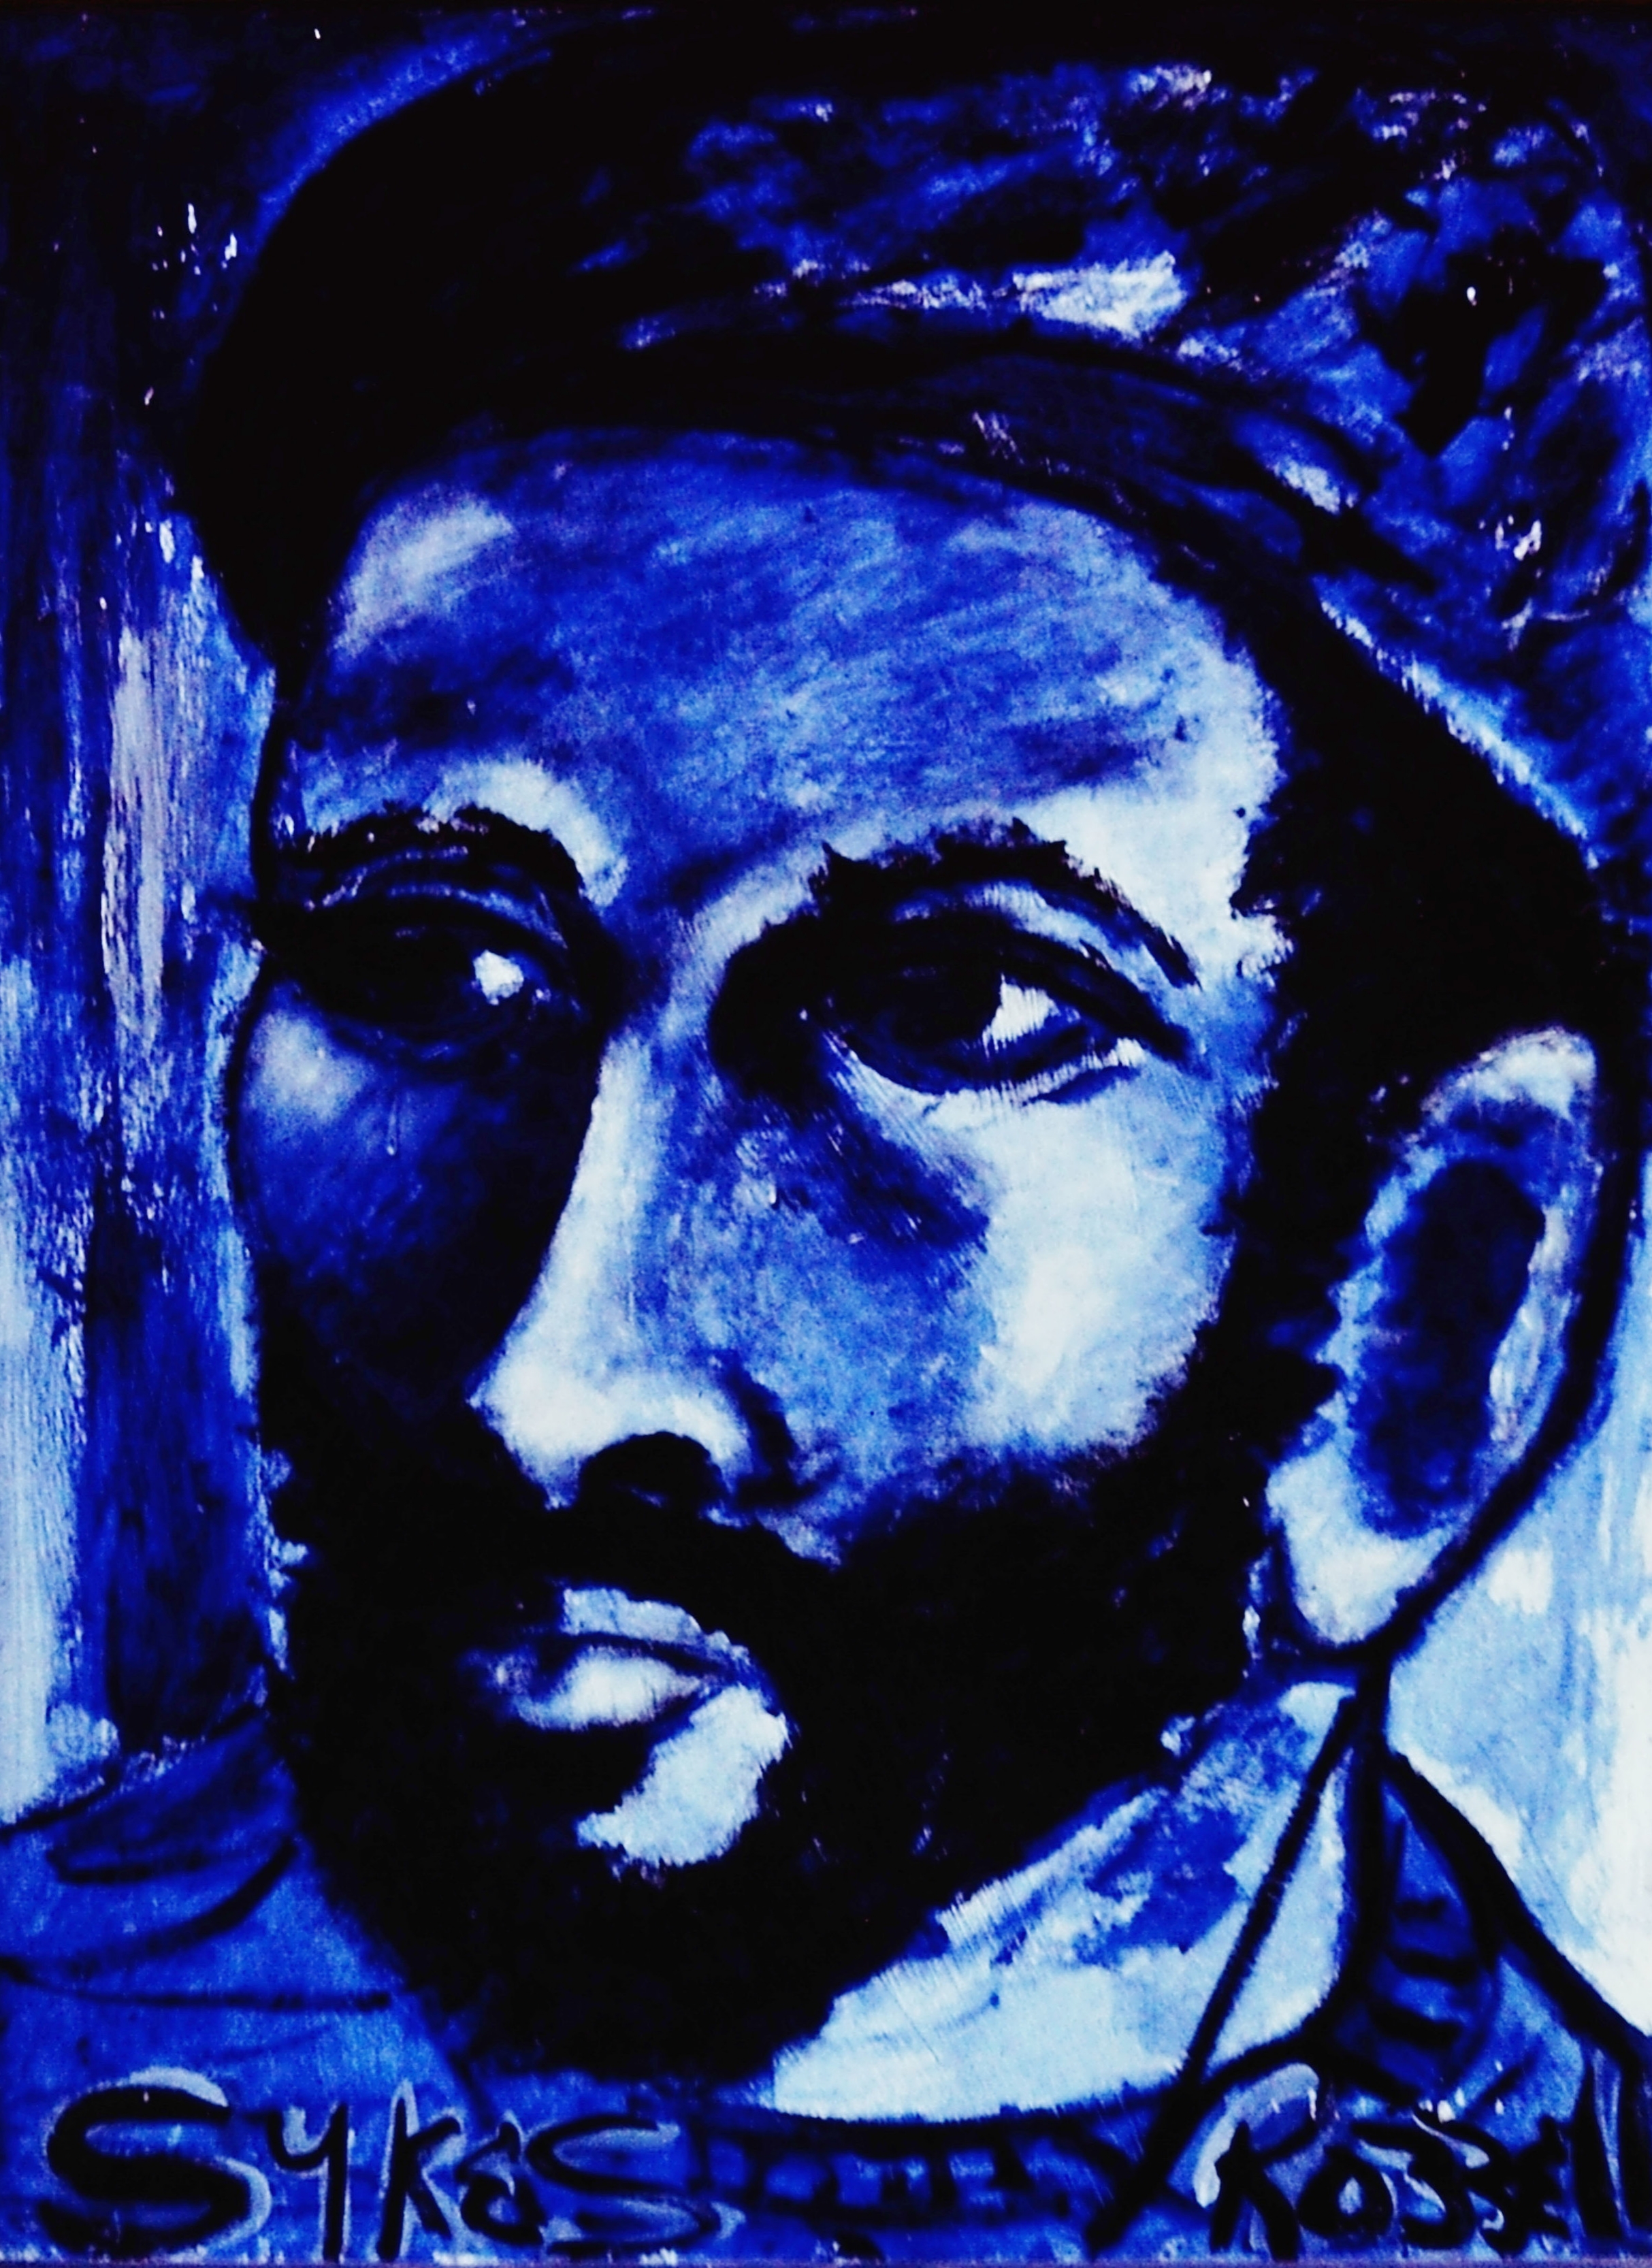 Self Portrait in Blue